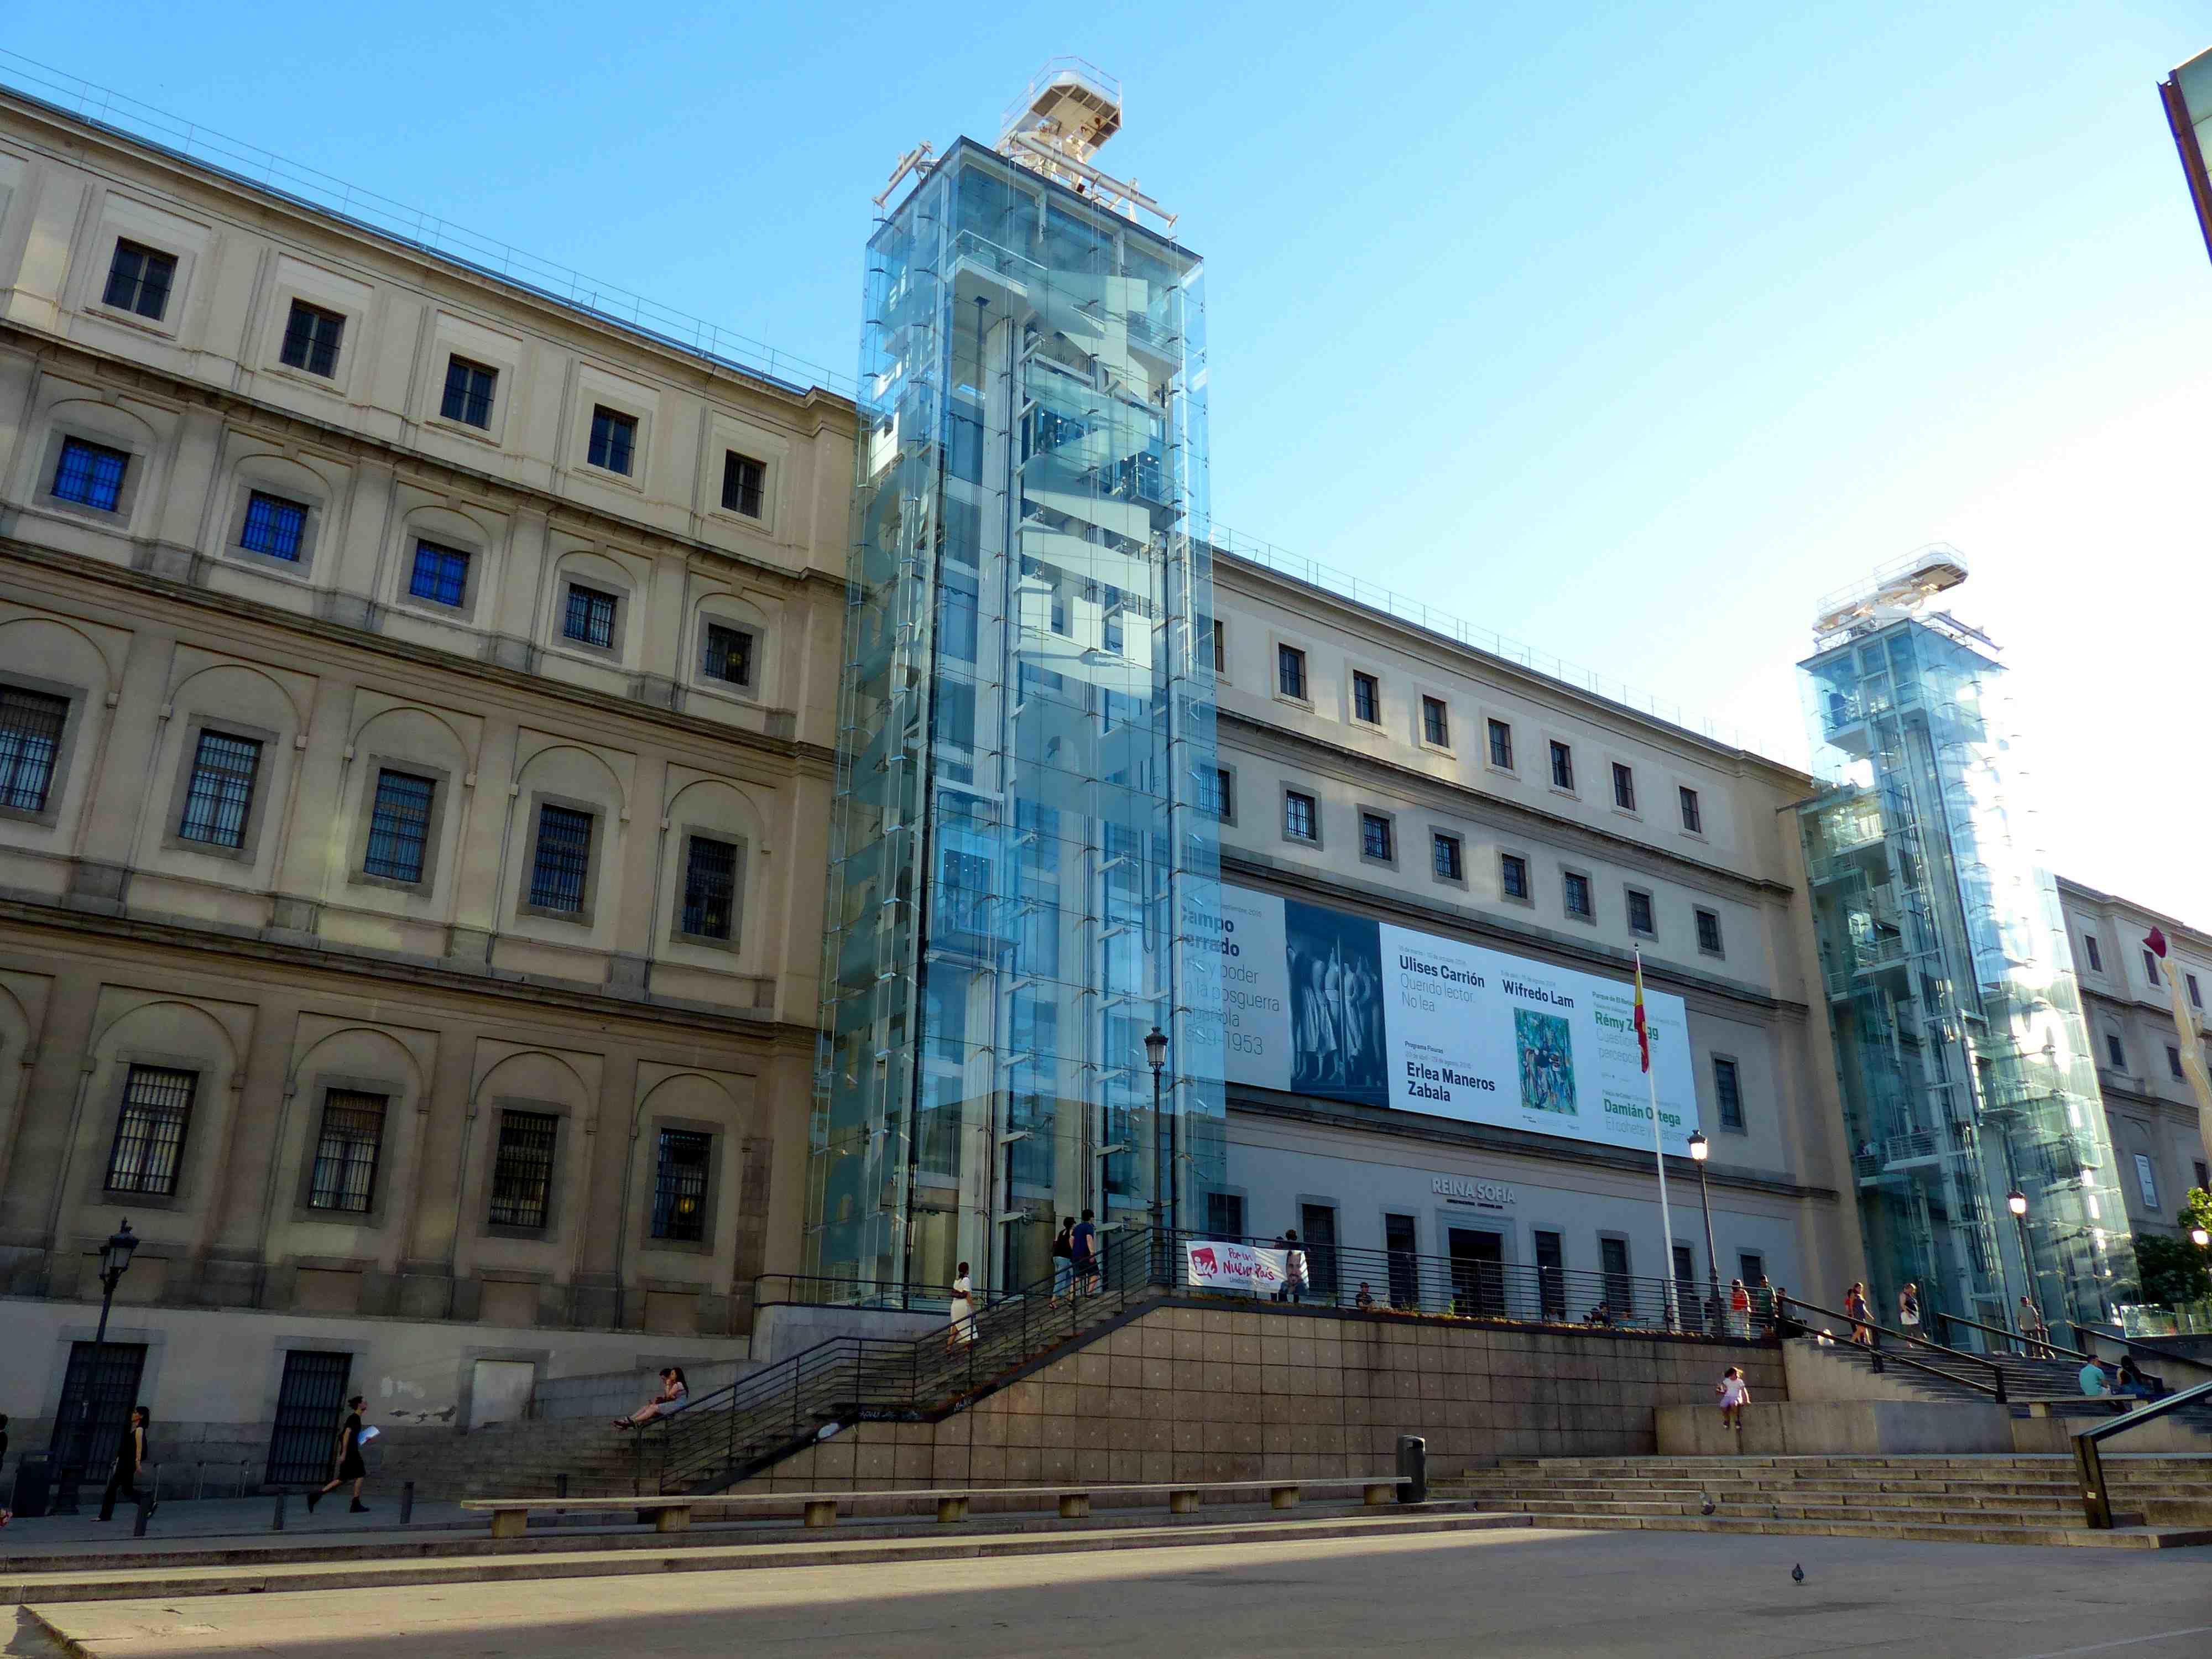 Musée de la Reine Sofia